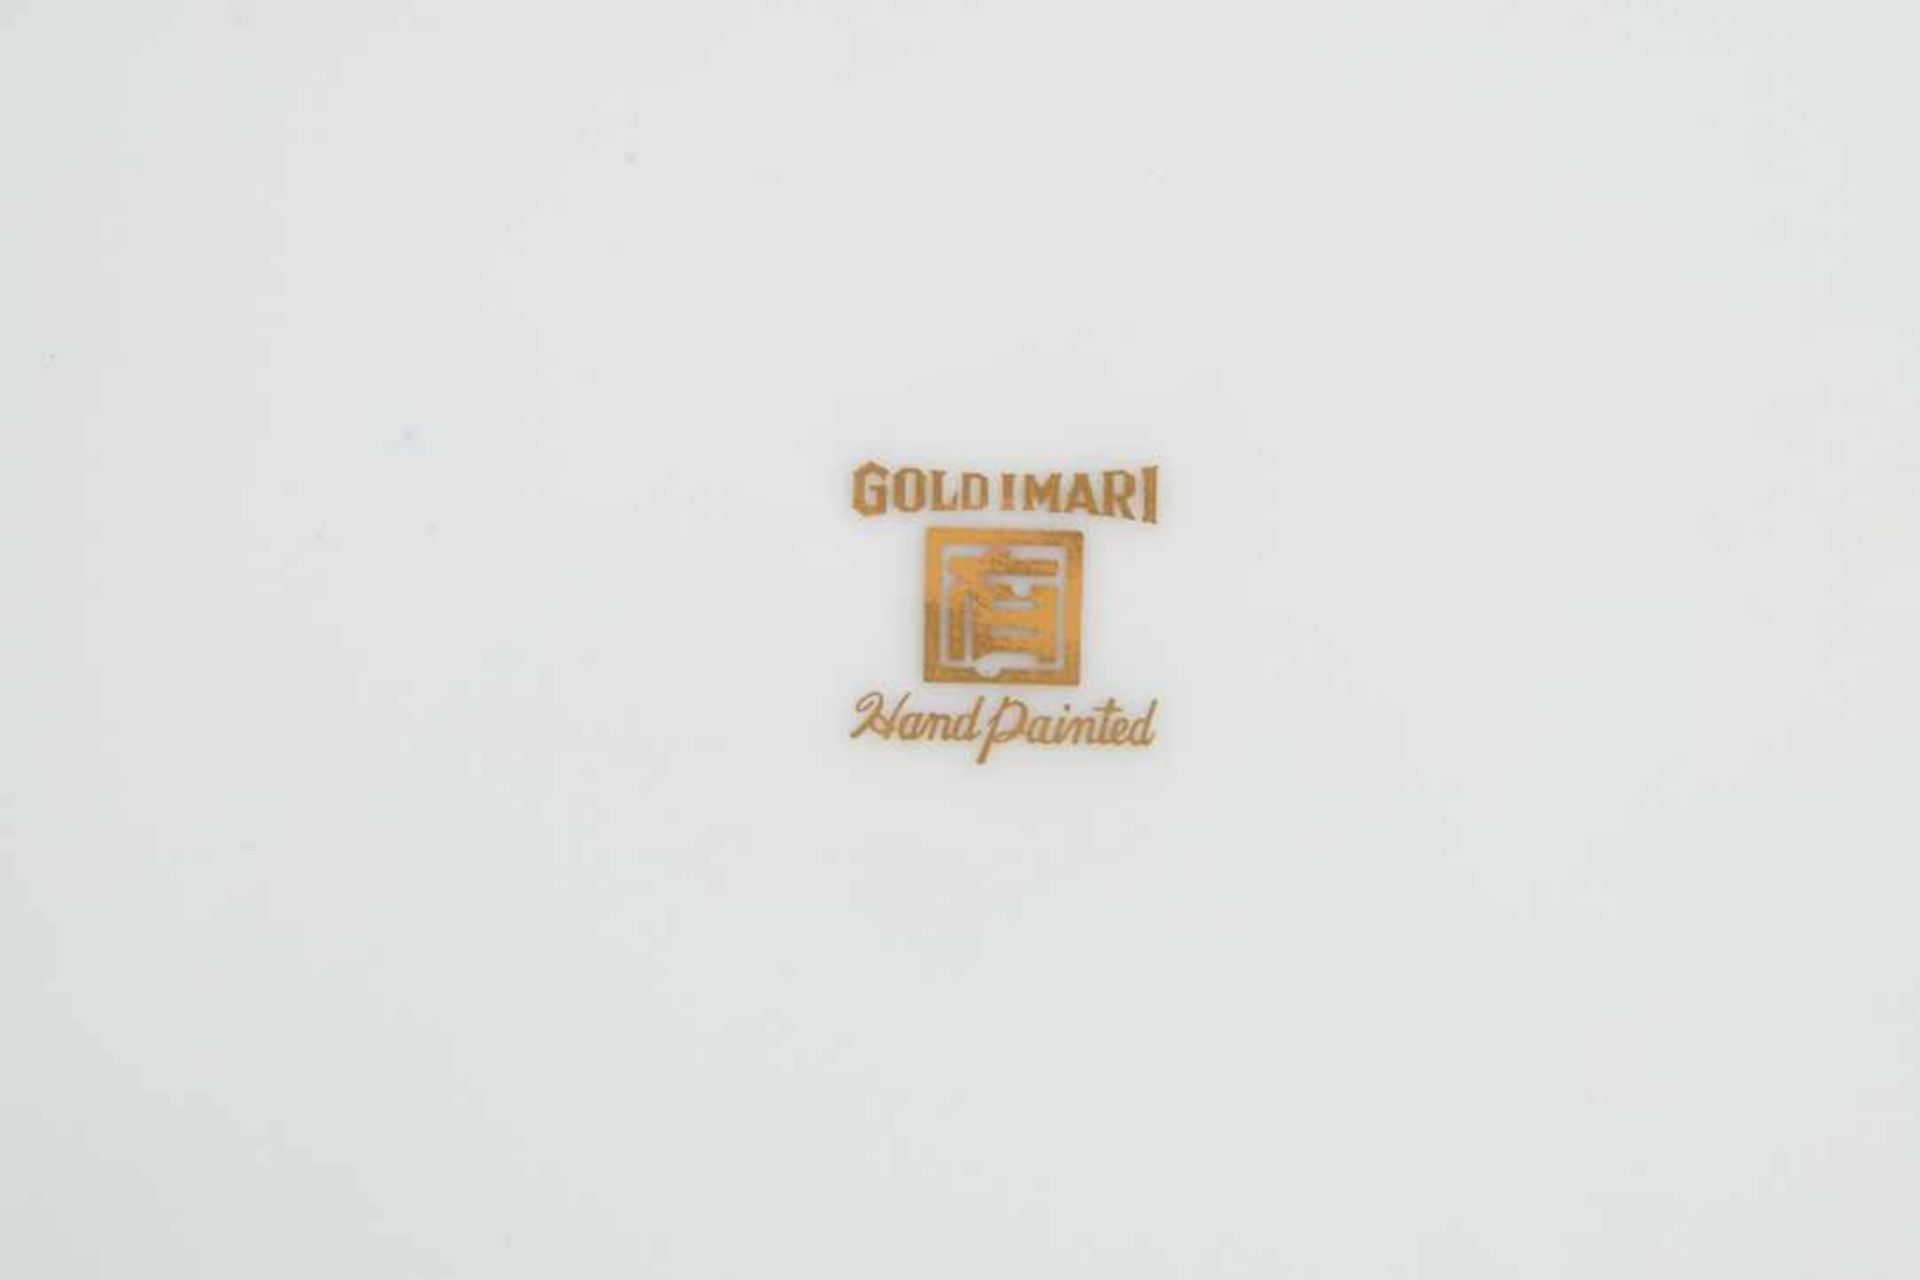 Gold-Imari. Zierteller.20. Jahrhundert, gemarkt. Durchmesser 31,5 cm - Image 4 of 7